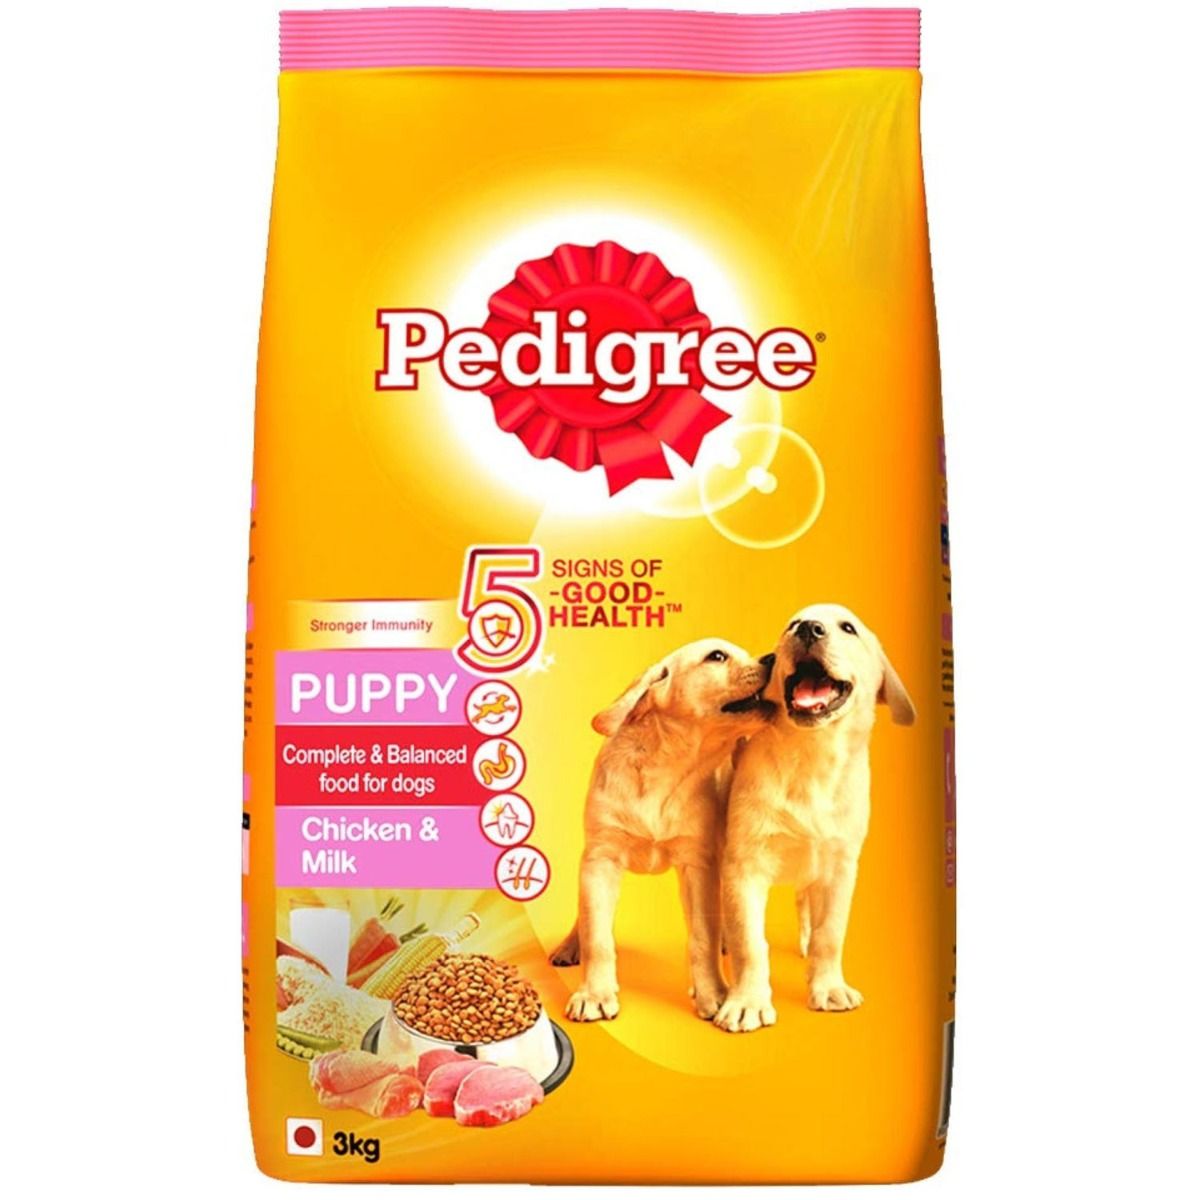 Pedigree Puppy Dog Food With Chicken & Milk, 3 kg, Pack of 1 